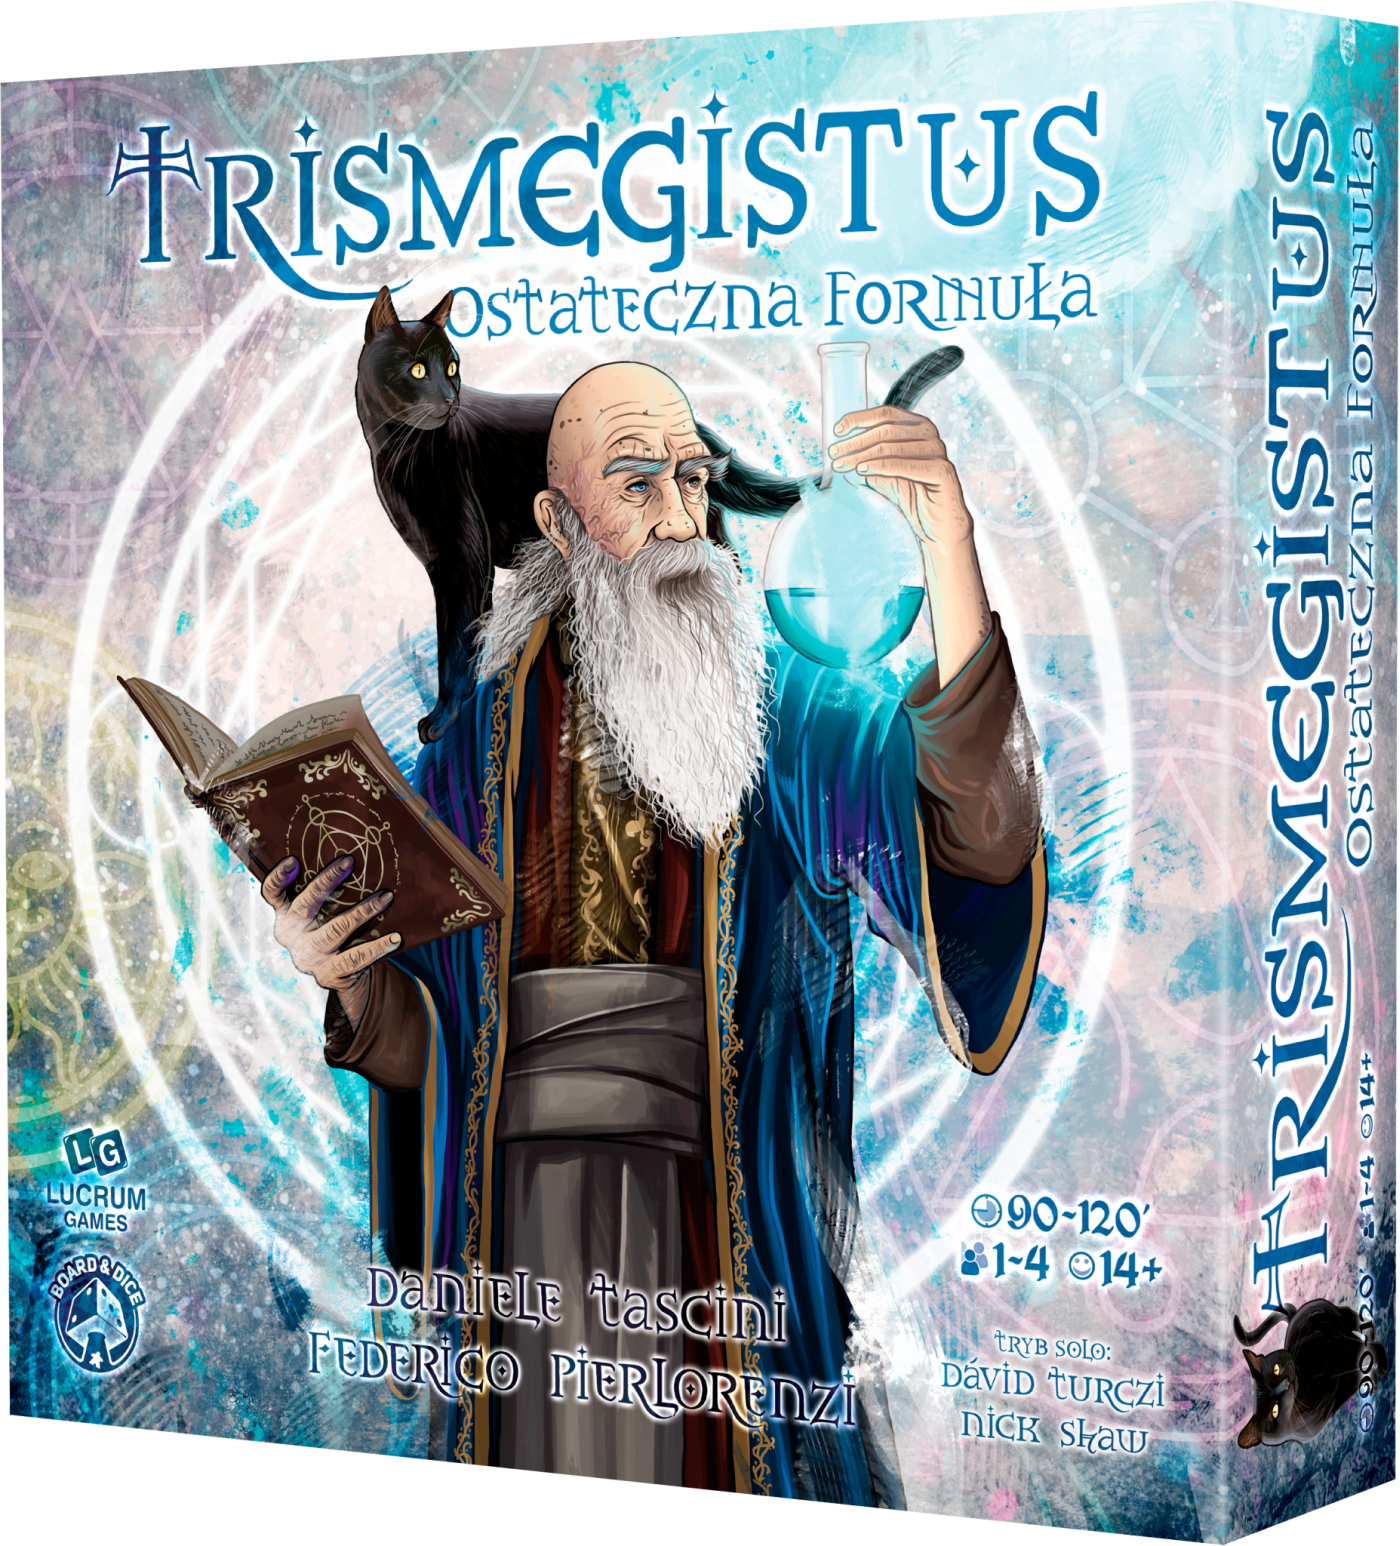 Trismegistus - Ostateczna Formuła